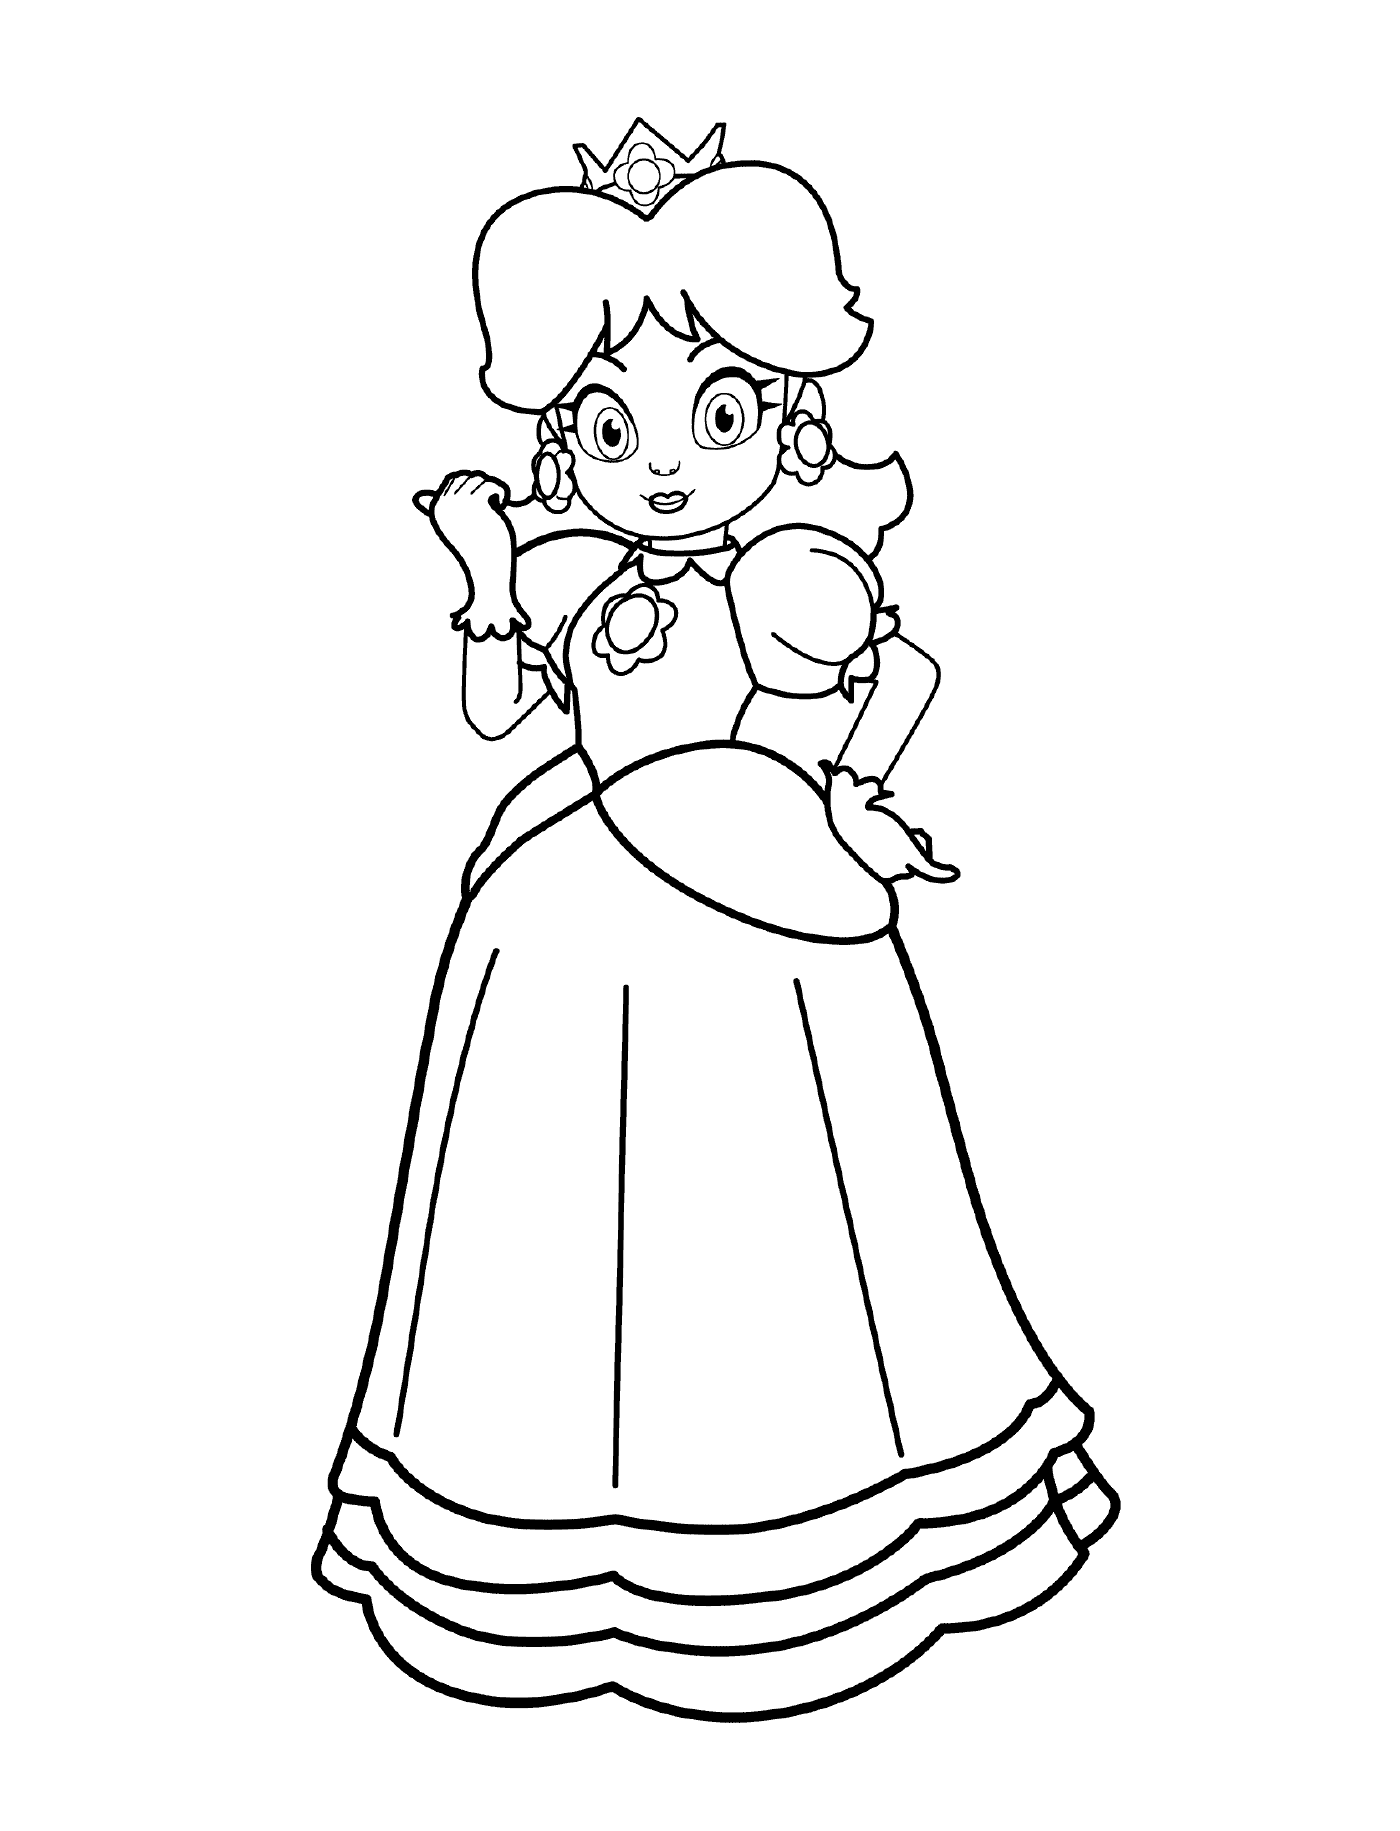  Princesa Daisy, una mujer con un vestido 